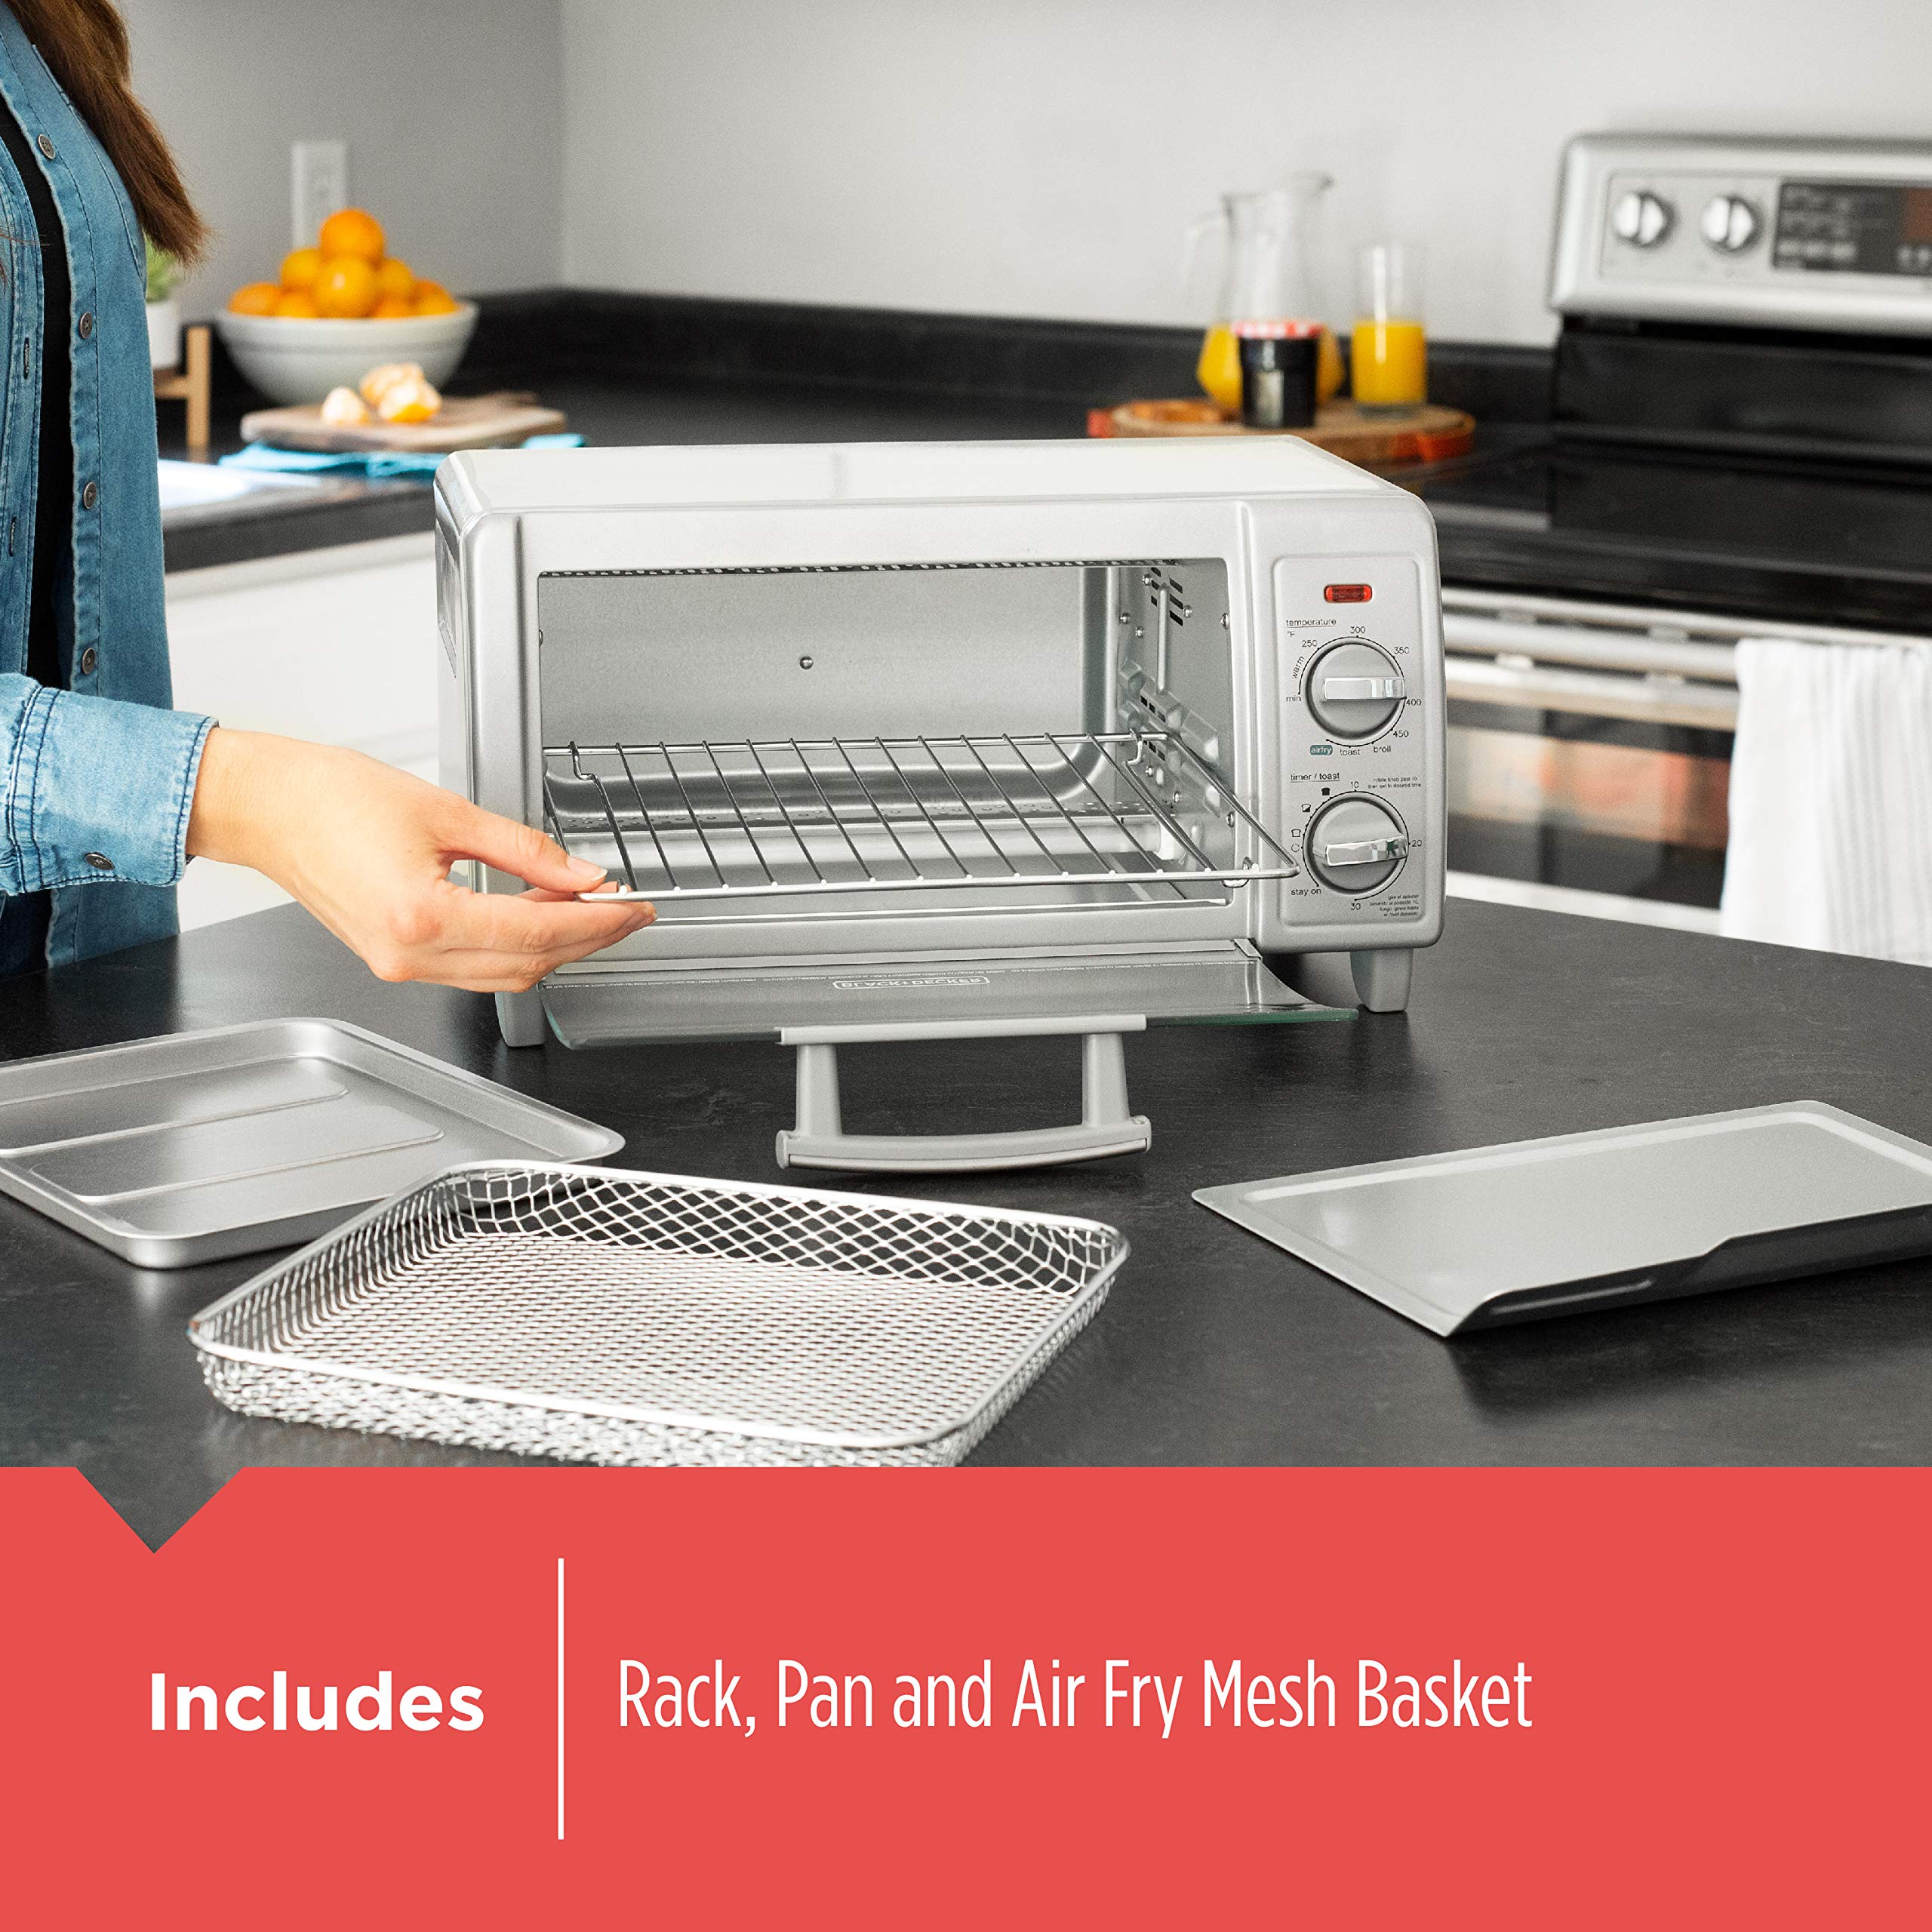 BLACK+DECKER TO1785SG Crisp N Bake Air Fry Toaster Oven, 4-Slice, Gray